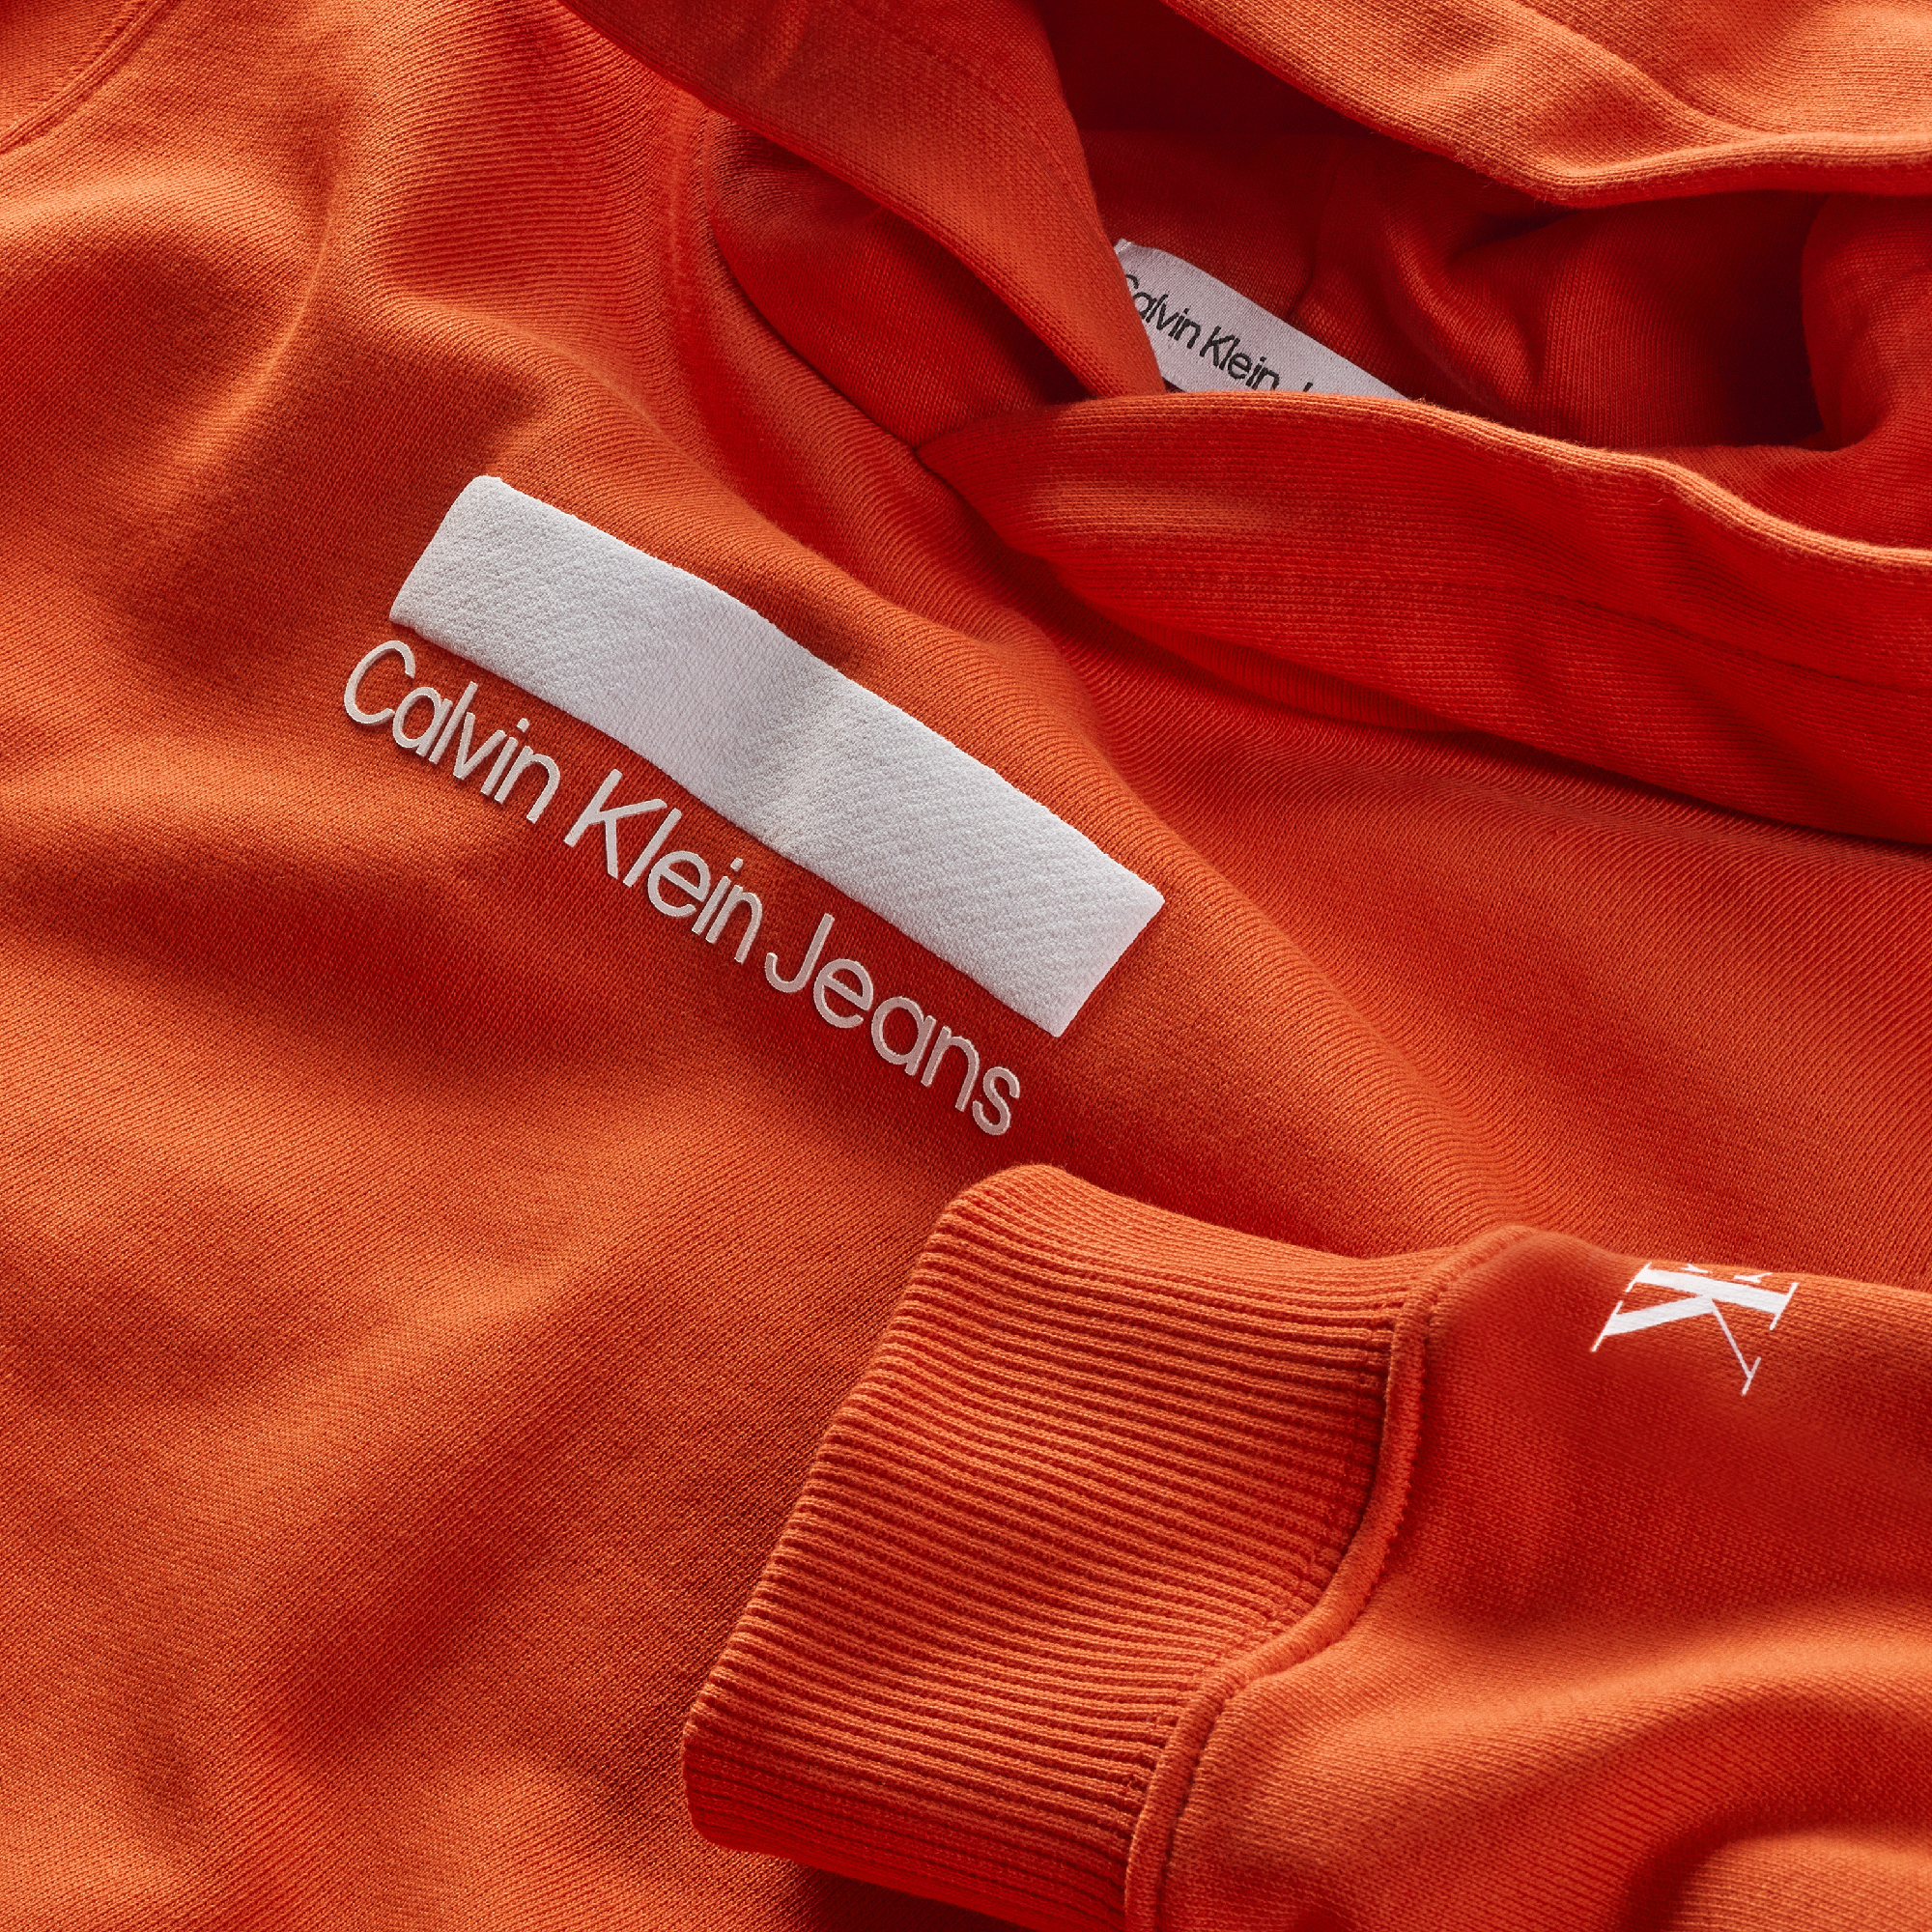 Jongens SMALL BLOCK LOGO HOODIE van Calvin Klein in de kleur Coral Orange in maat 176.